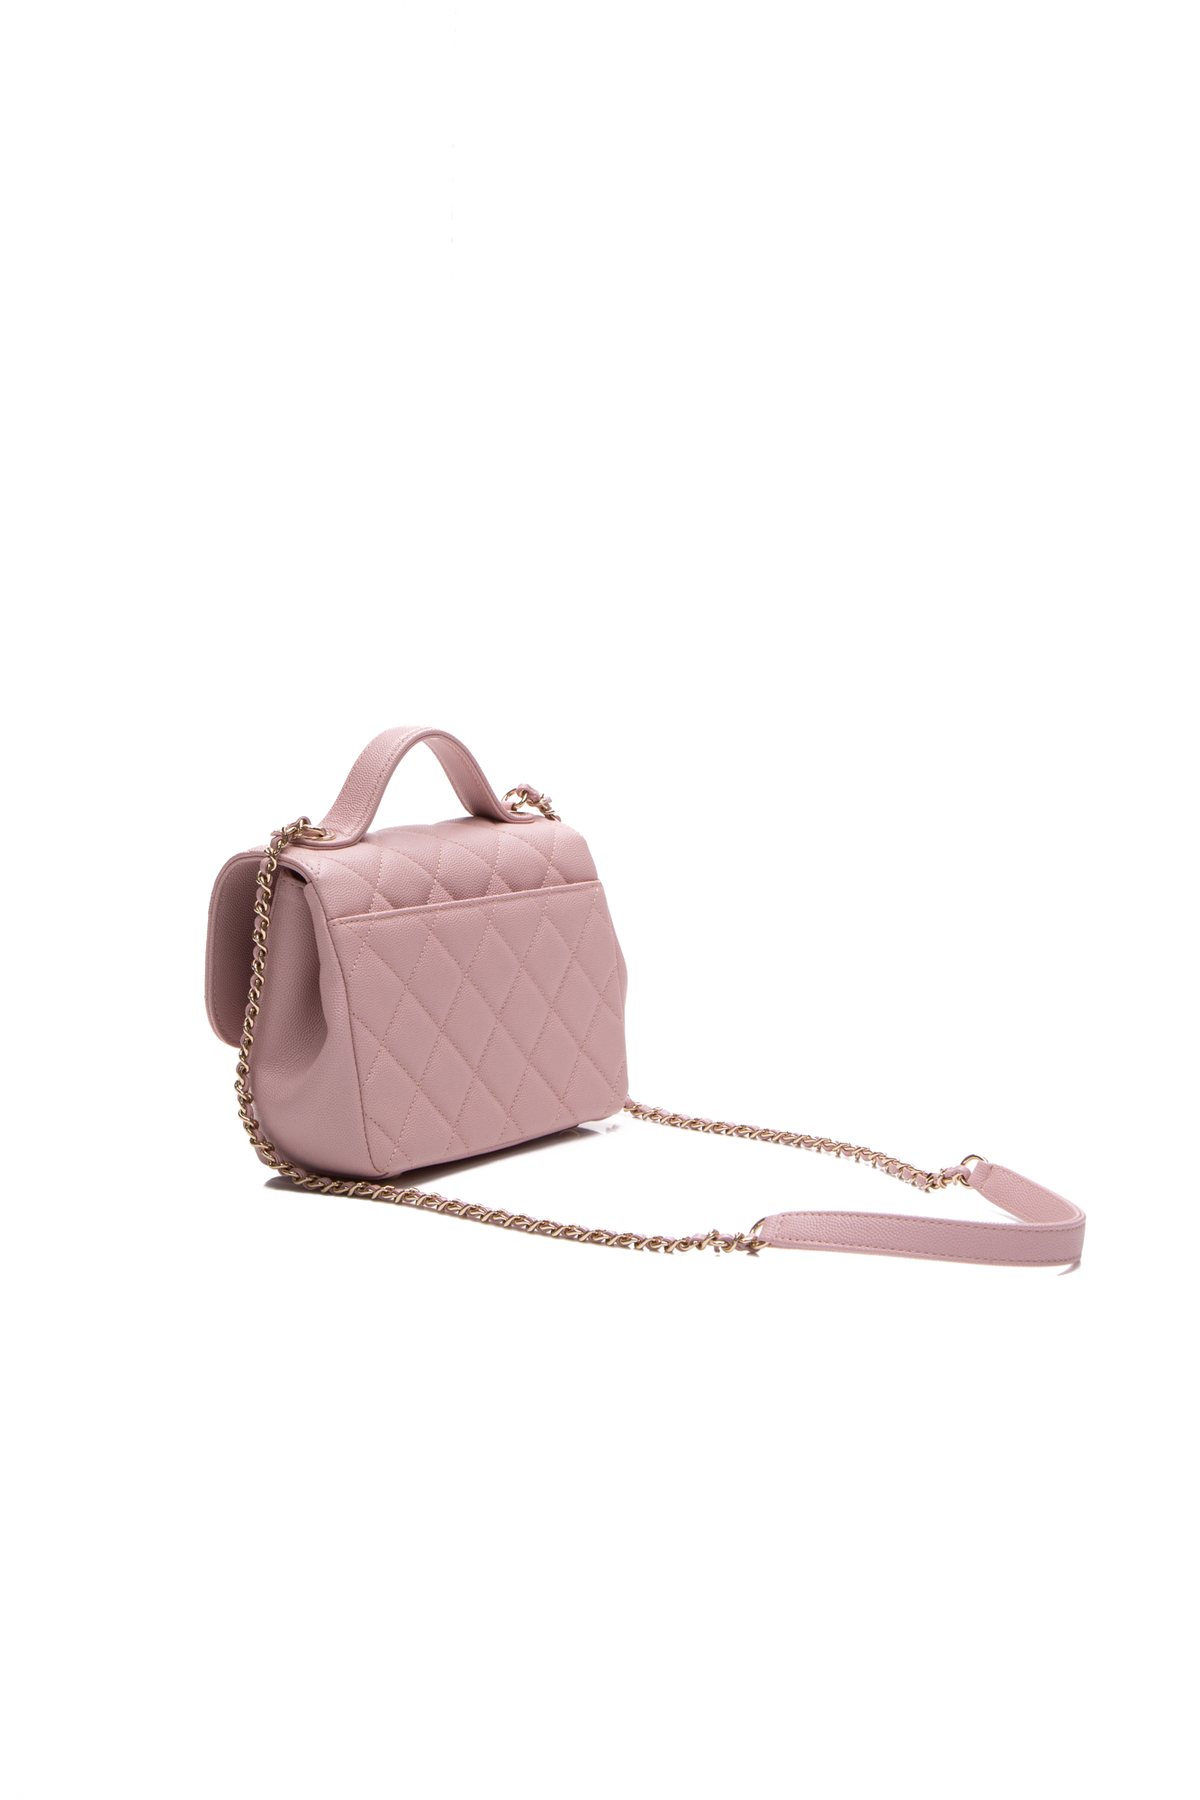 Chanel Business Affinity Flap Bag Ft. 3 OOTD, Camel Color